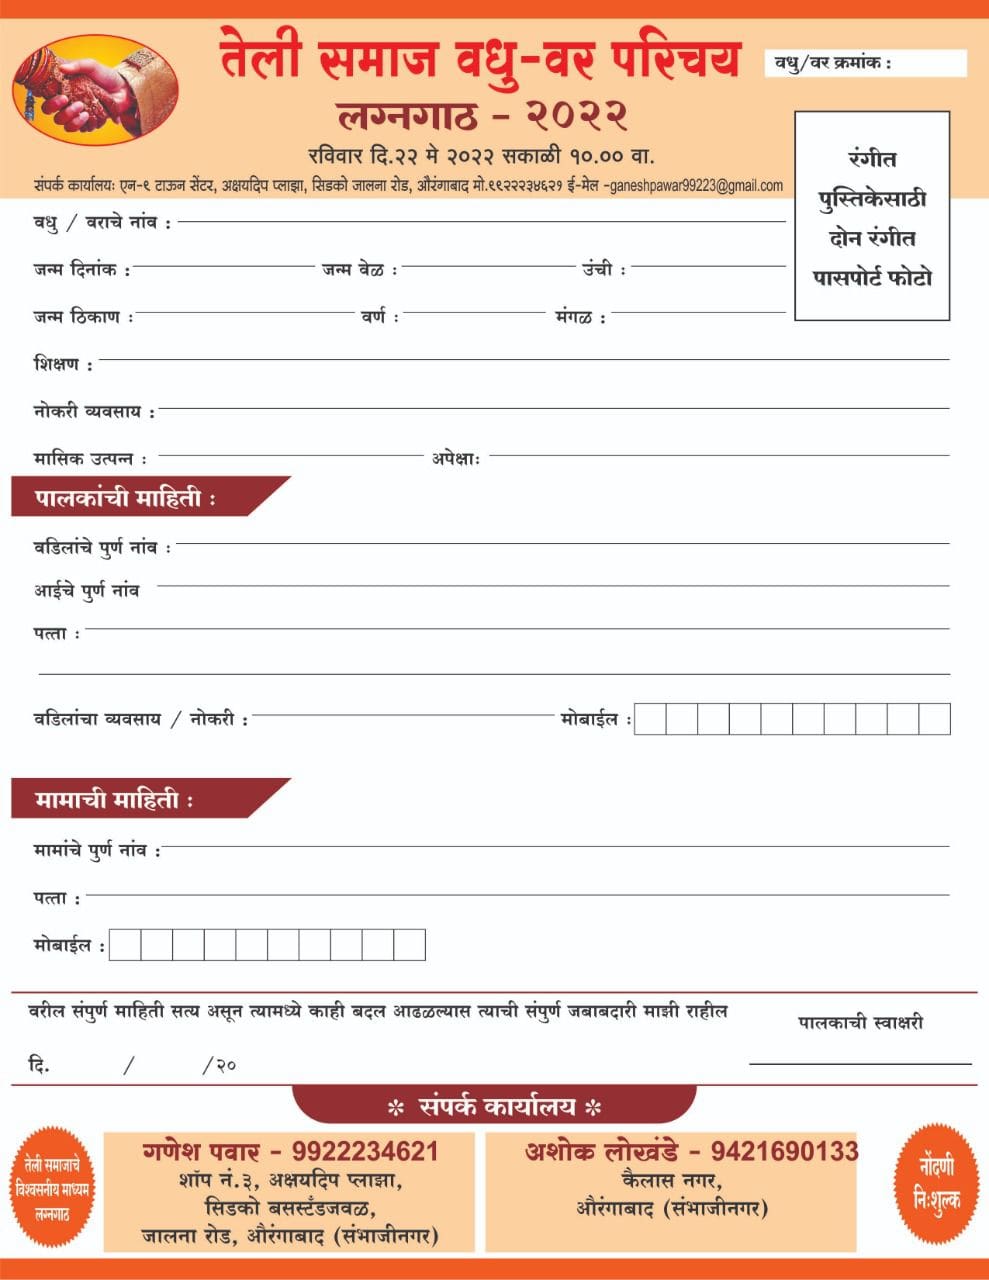 Aurangabad teli Samaj Vadhu Var Parichay melava form 2022